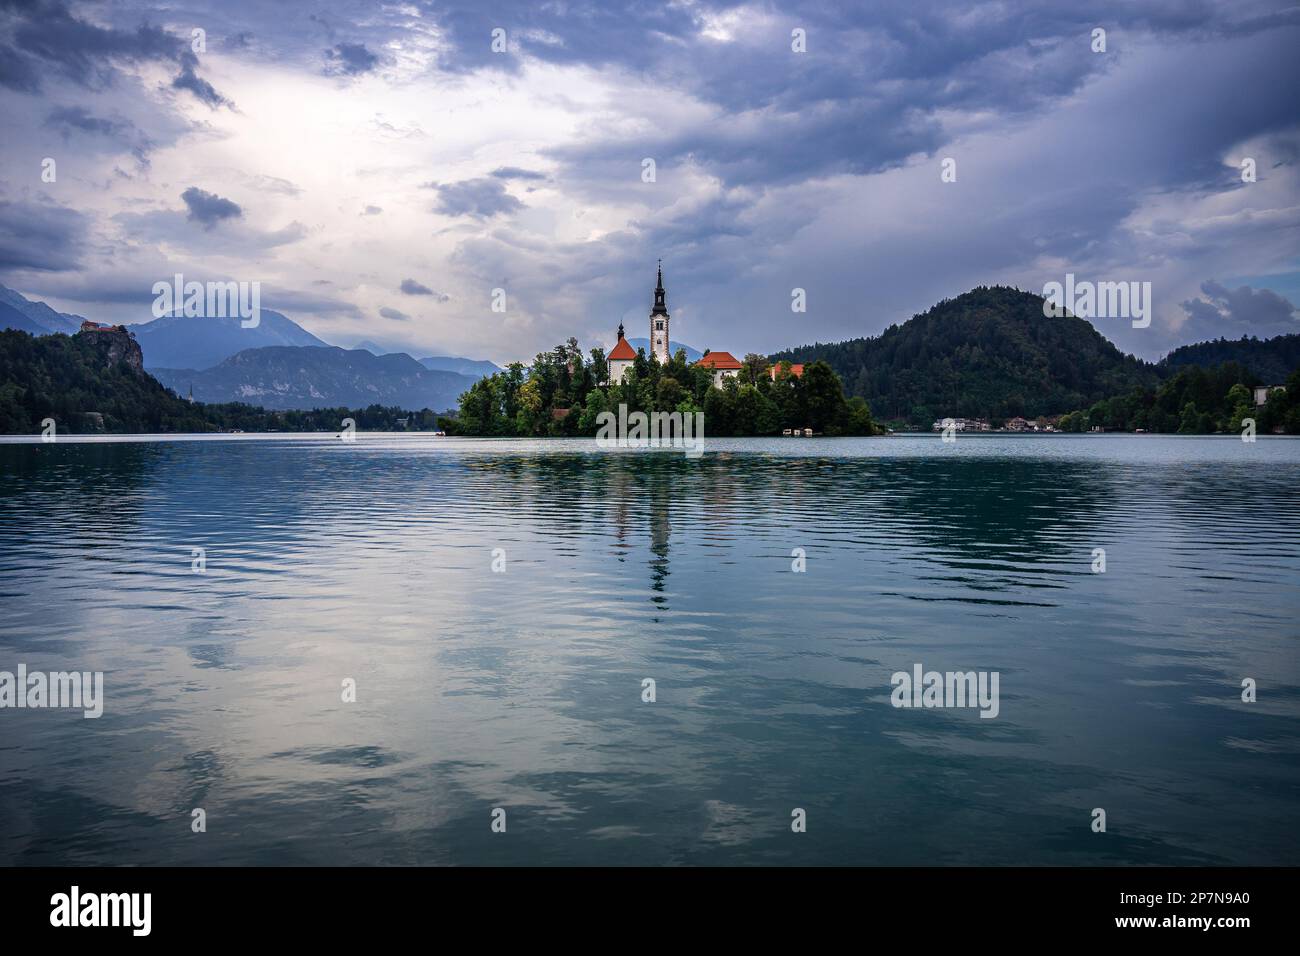 Le lac Bled et les collines environnantes se reflètent dans l'eau par une journée nuageux, Bled, Slovénie Banque D'Images